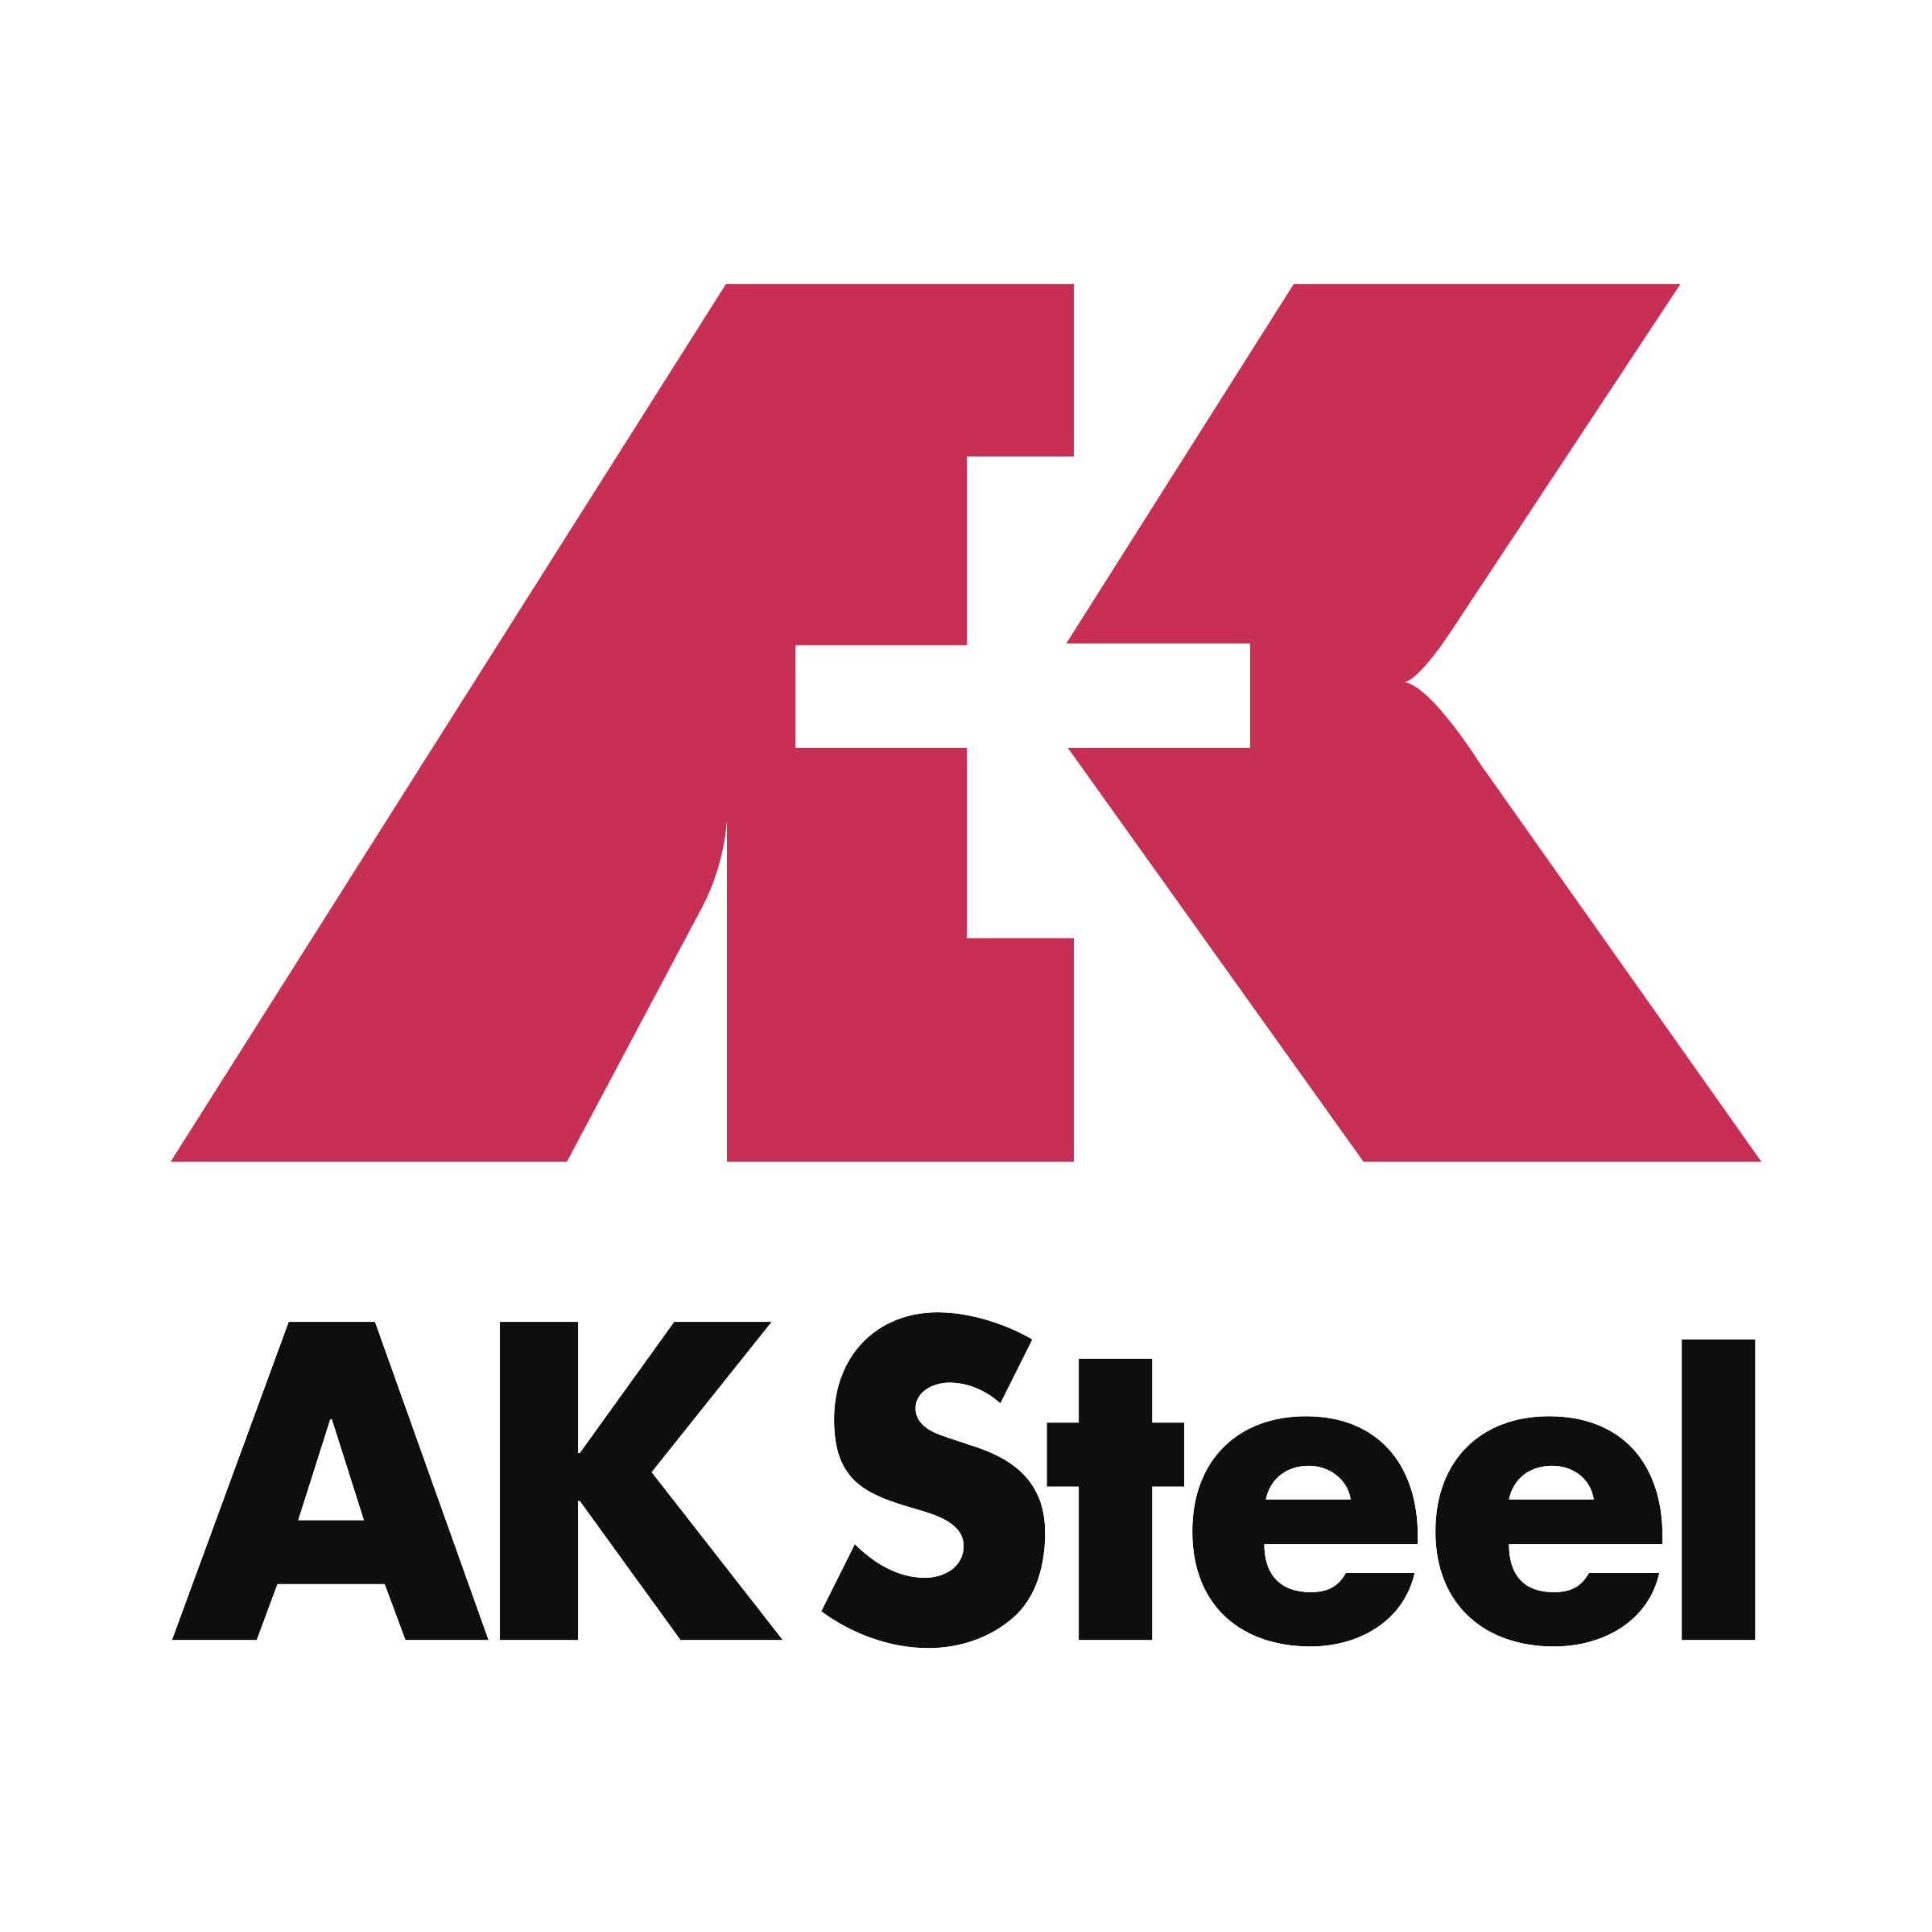 AK Steel employs ONU engineers